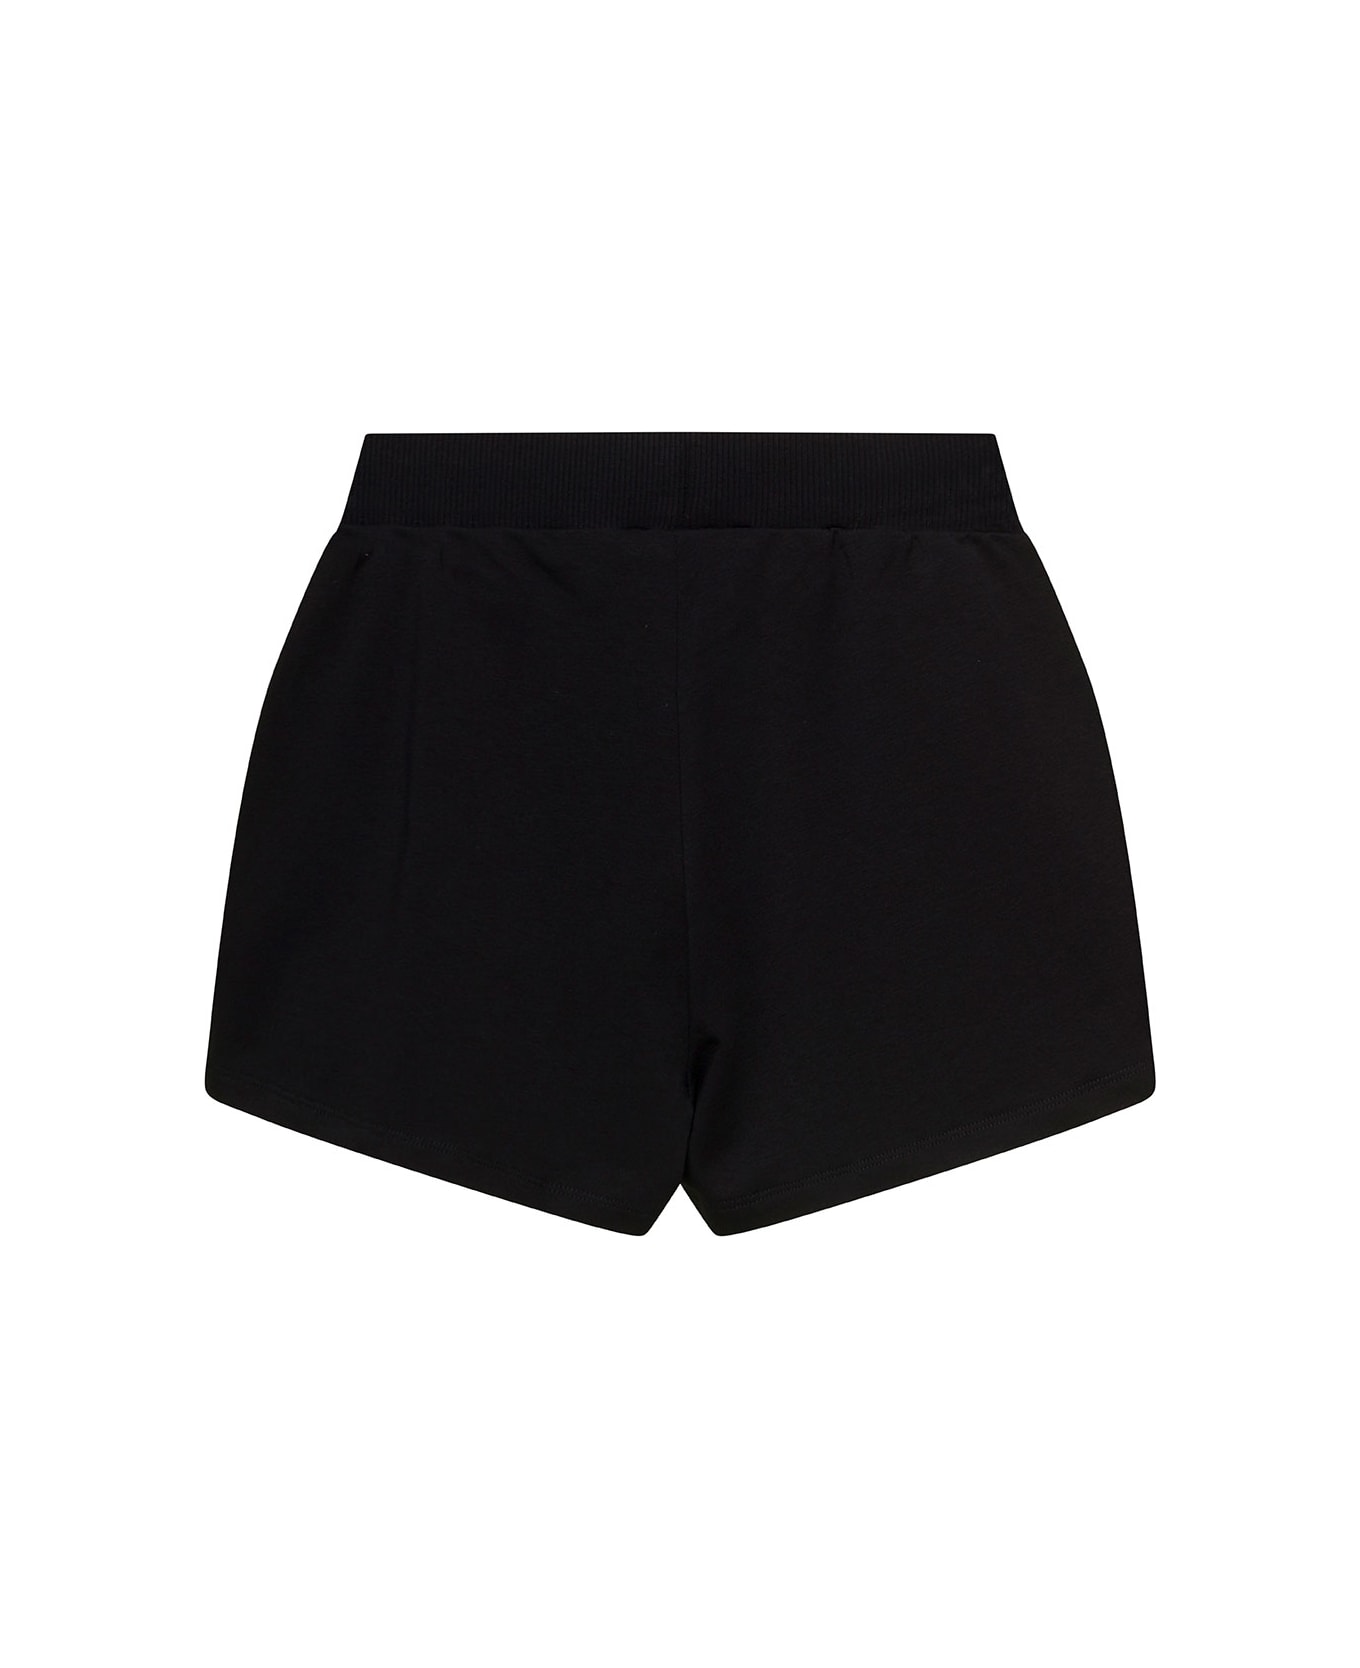 Chiara Ferragni Black Shorts With Rhinestone Embellished Logo In Stretch Cotton Girl - Black